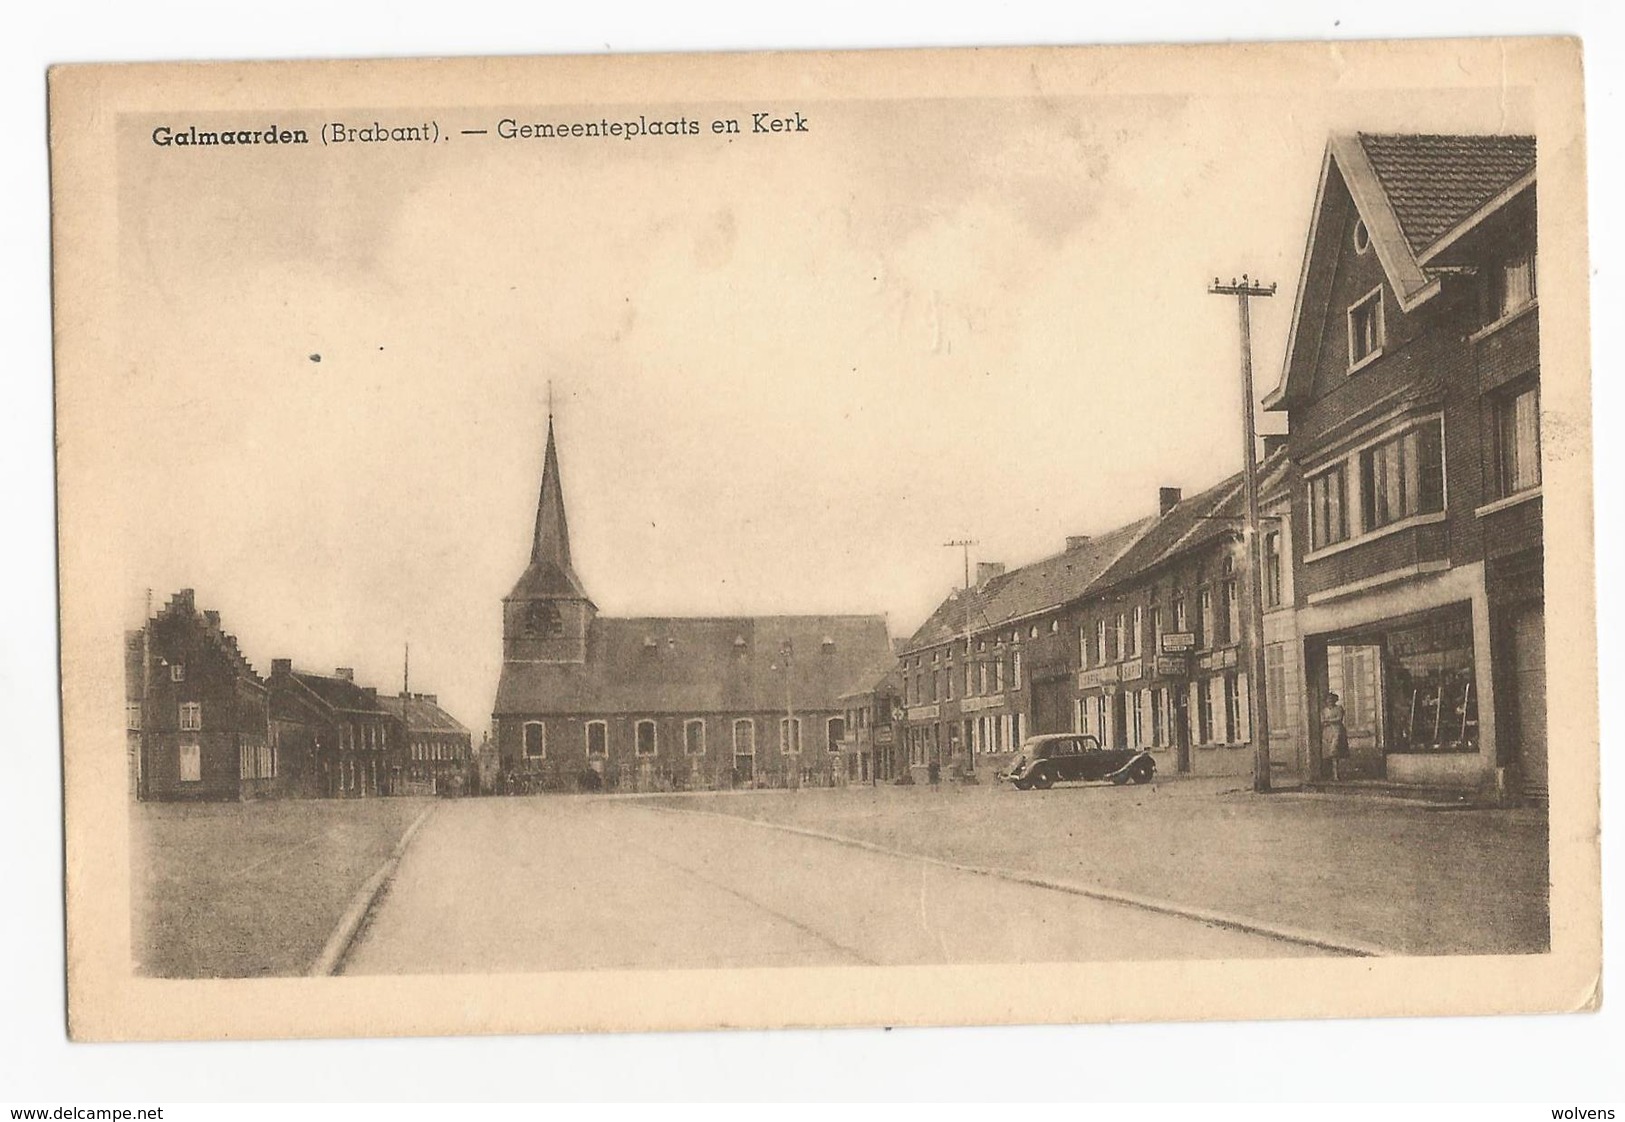 Galmaarden Gemeenteplaats En Kerk Oude Postkaart Oldtimer Citroen Traction - Galmaarden